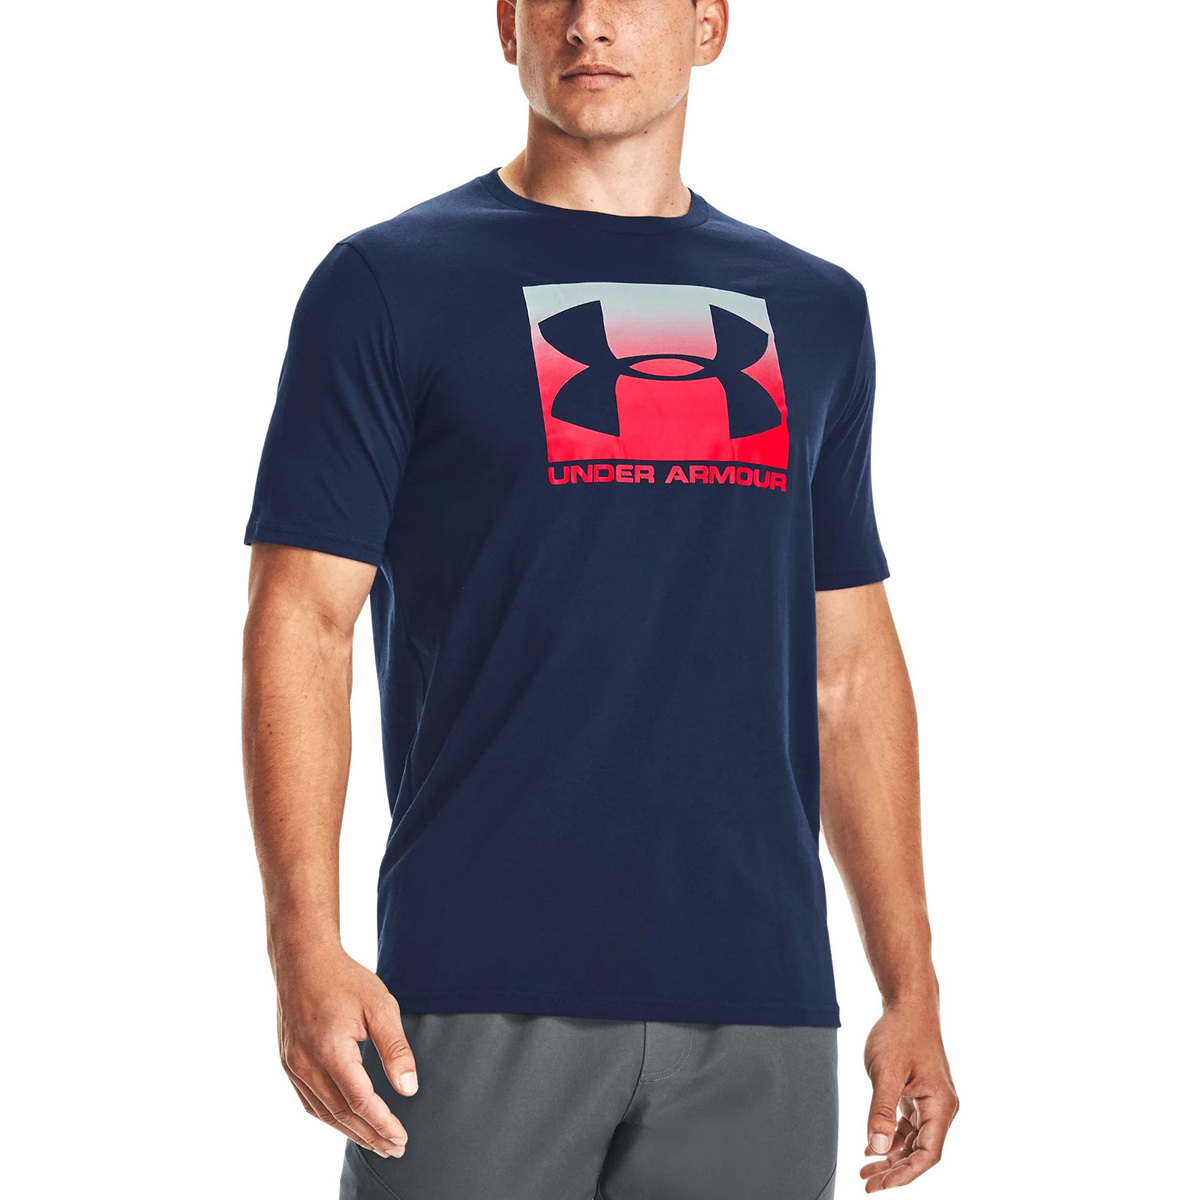 Abbigliamento Uomo T-shirt maniche corte Under Armour 1329581-408 Blu